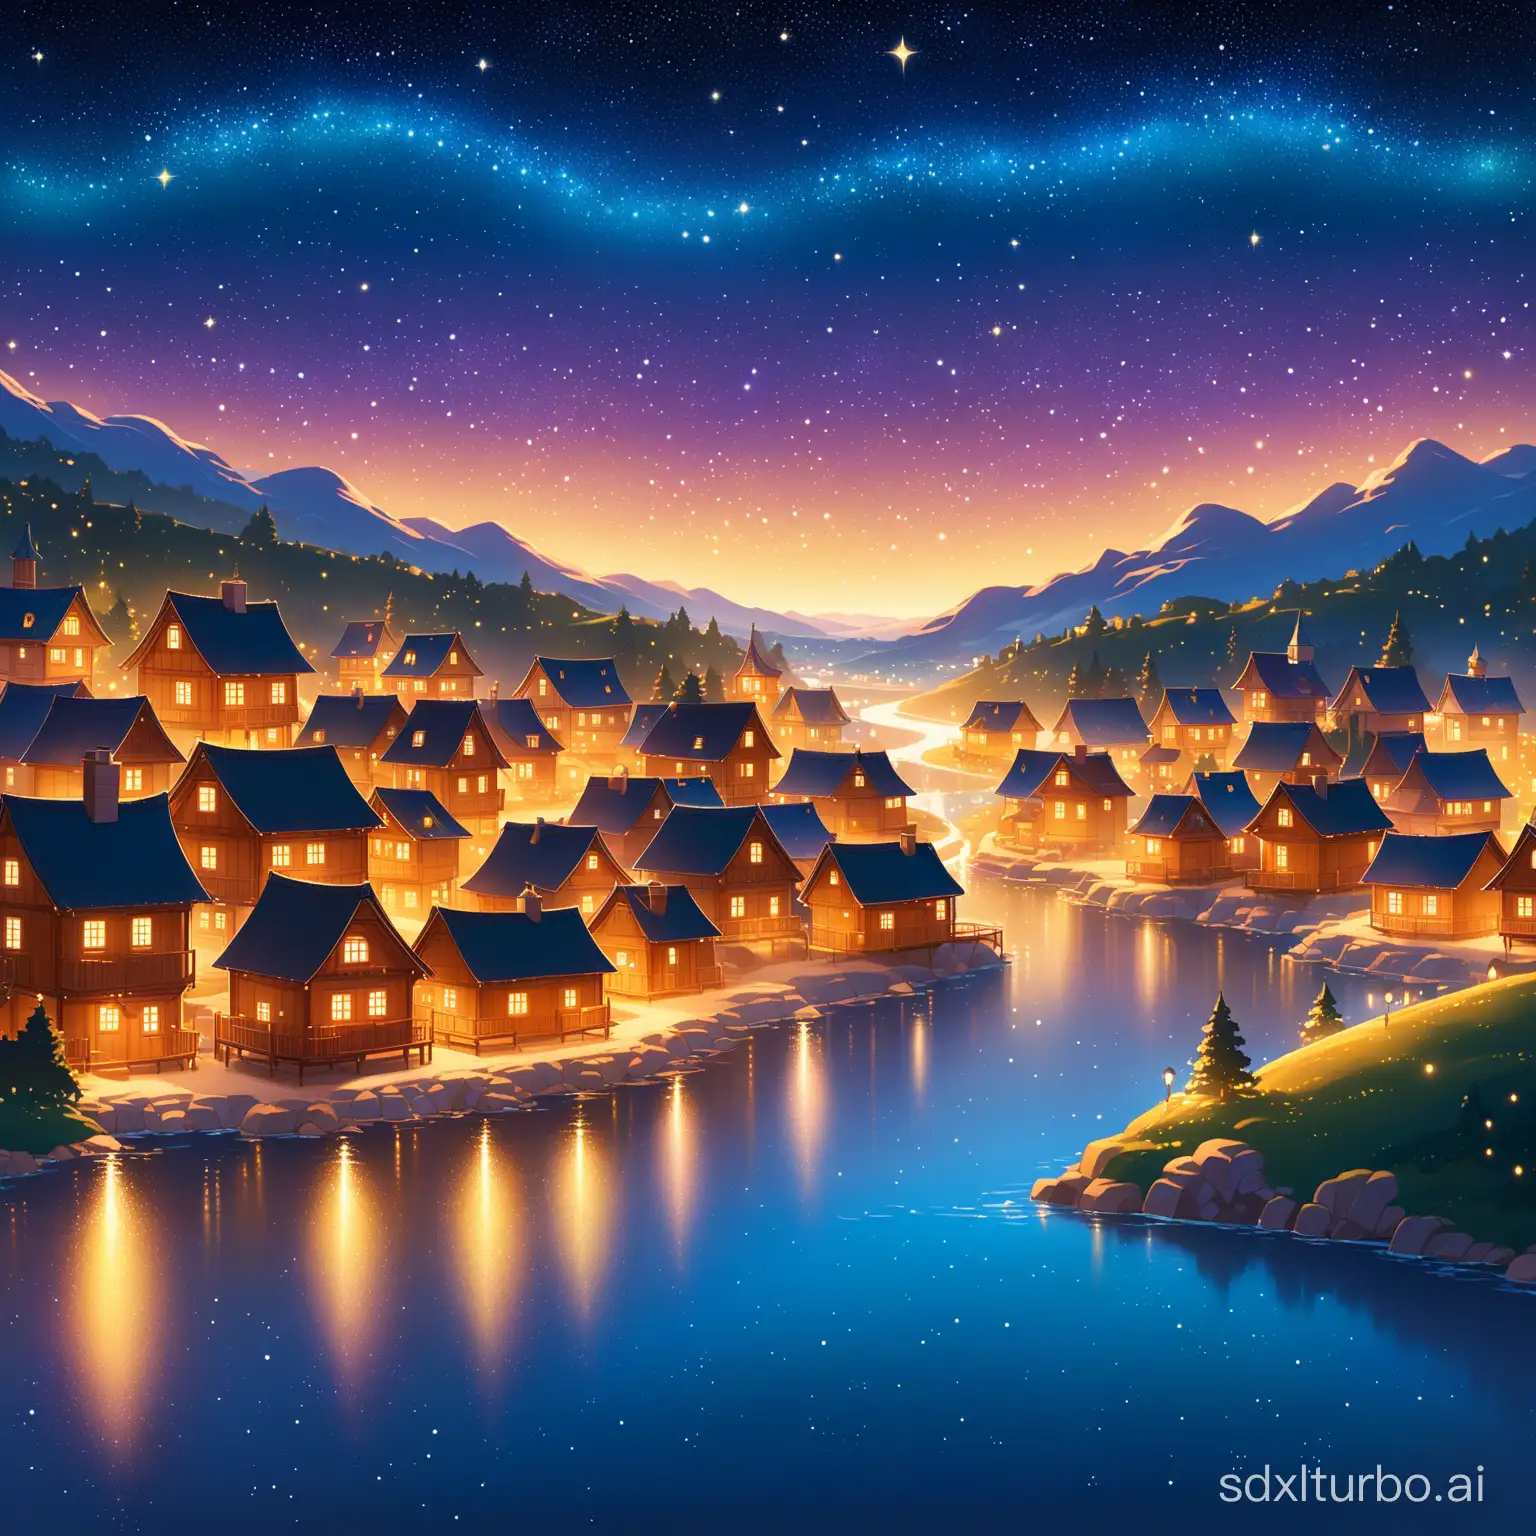 一个宁静的小镇，夜晚的星空闪烁，温暖的灯光洒在小房子上，迪士尼风格，画面比例9:16